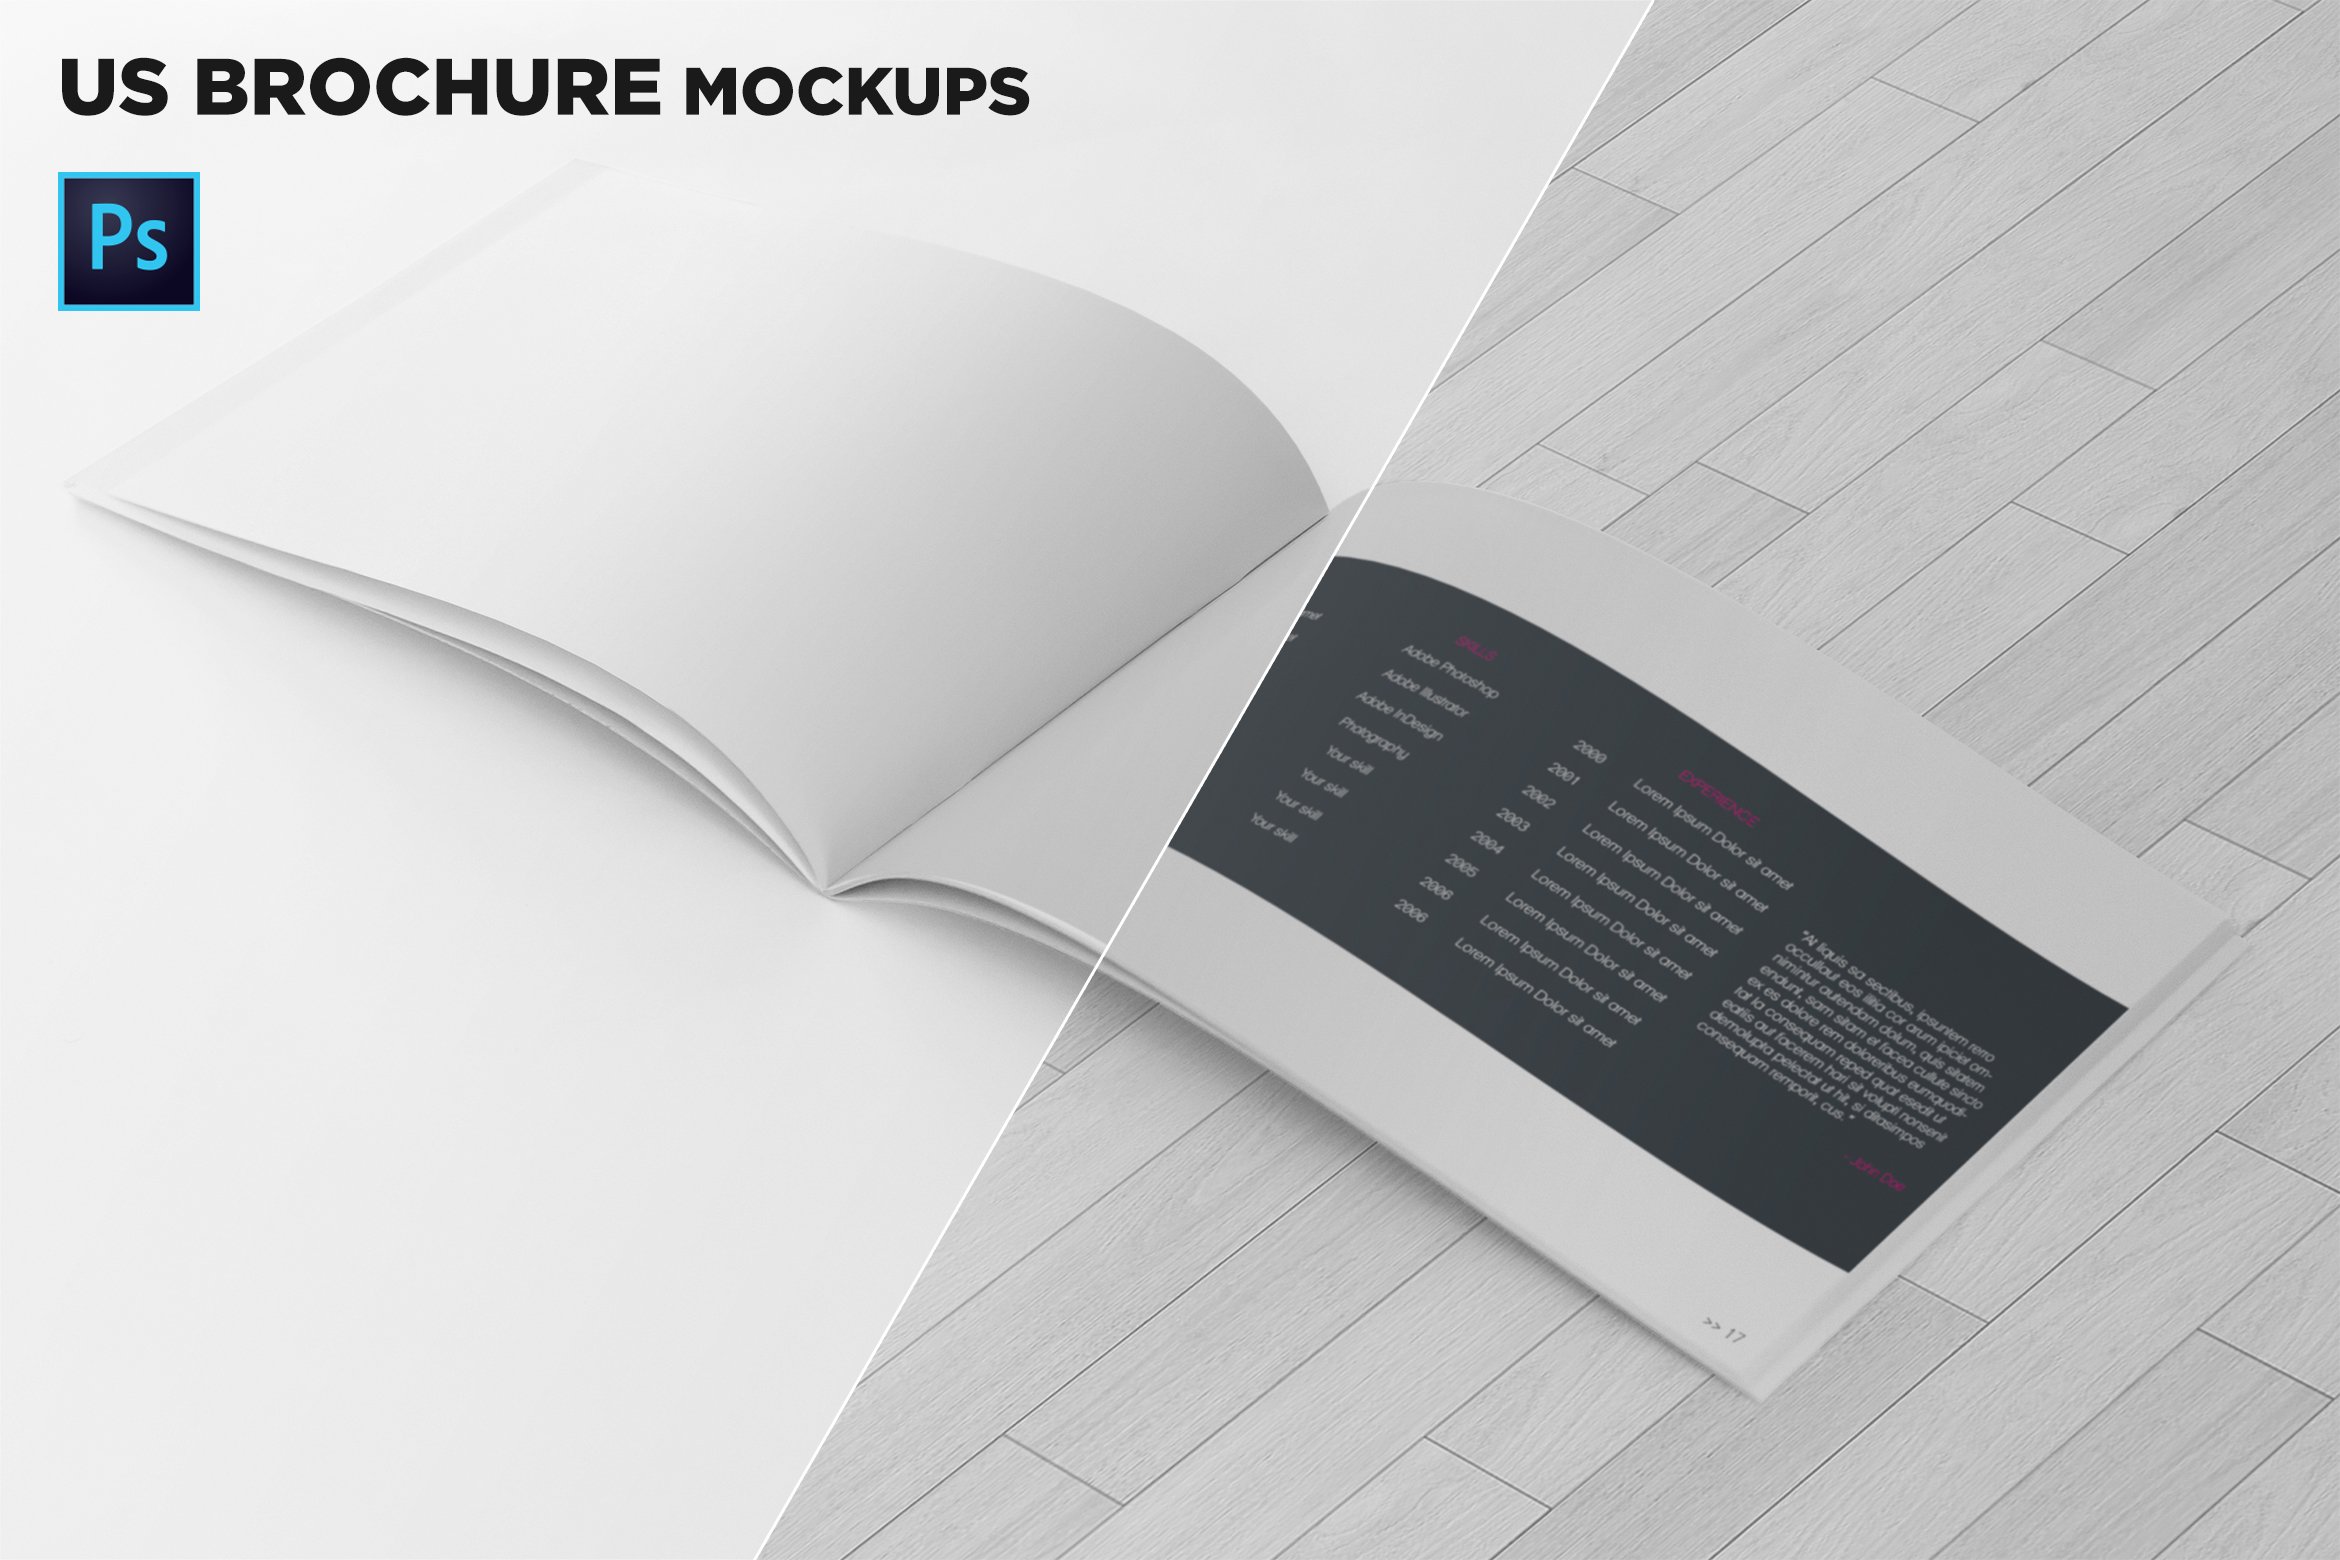 US Half-Letter Brochure Mockups cover image.